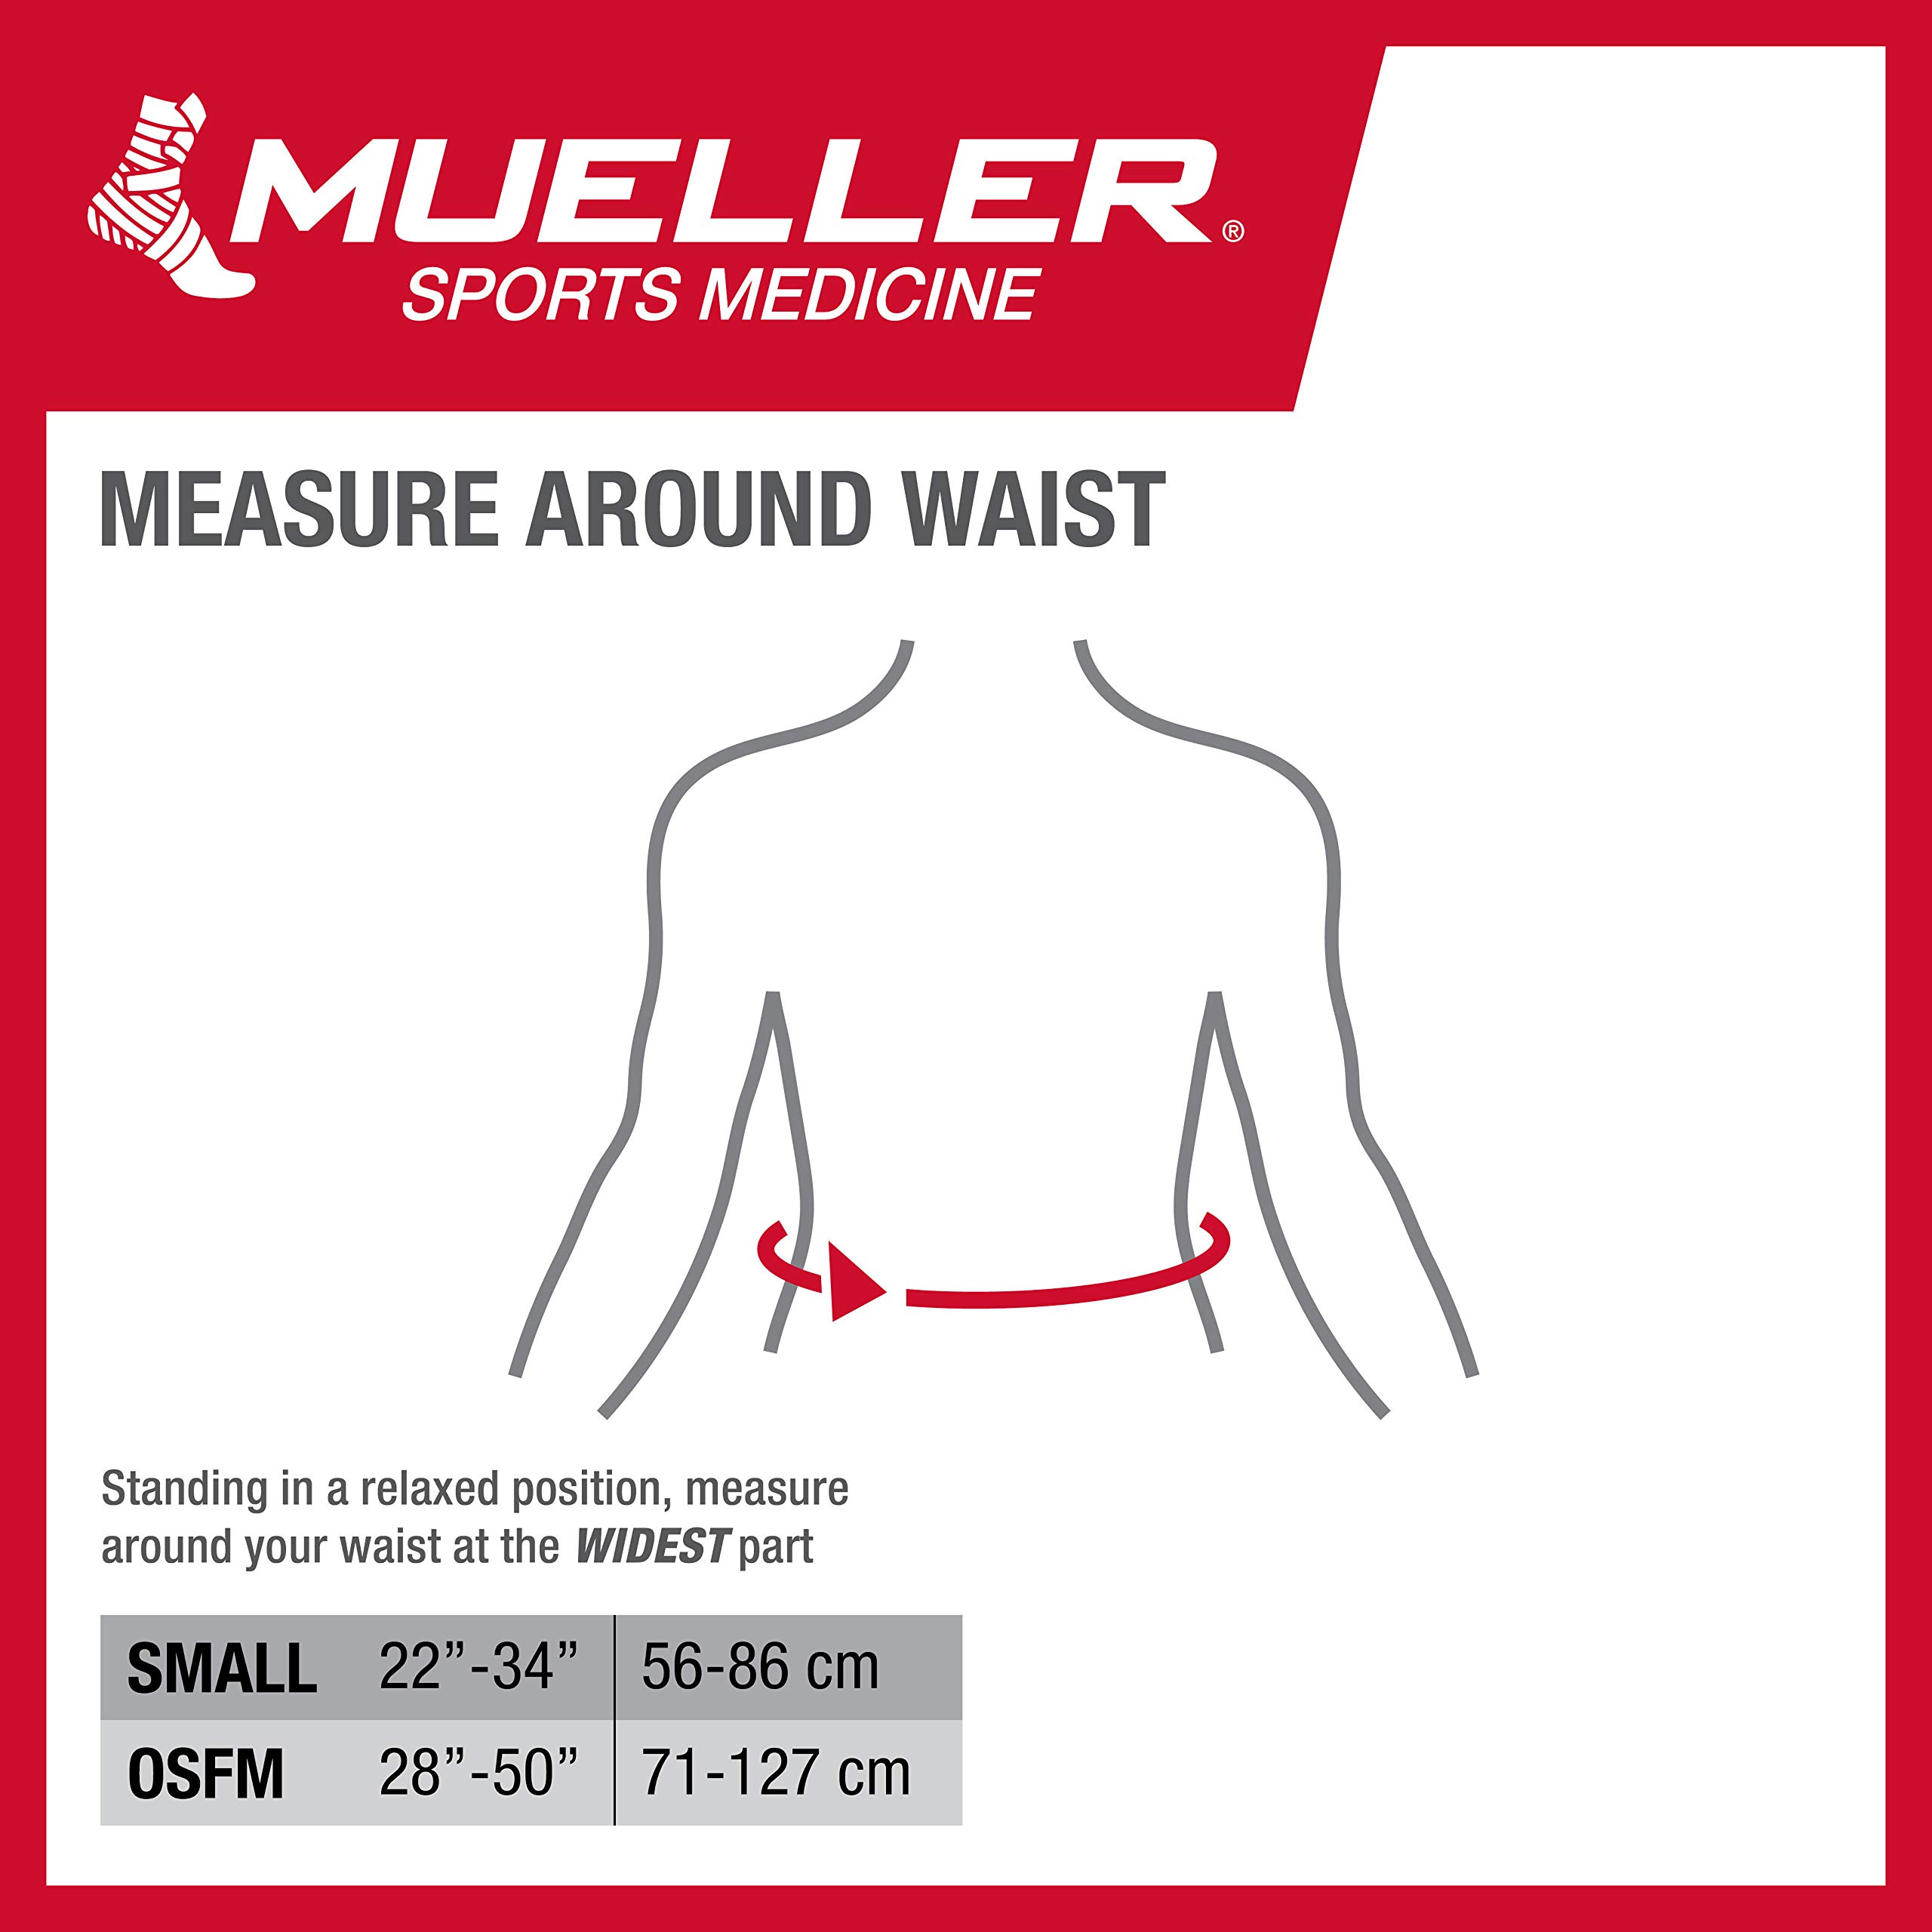 Mueller Sports Medicine Adjustable Back Brace, Back Support, For Men and Women, Black, One Size